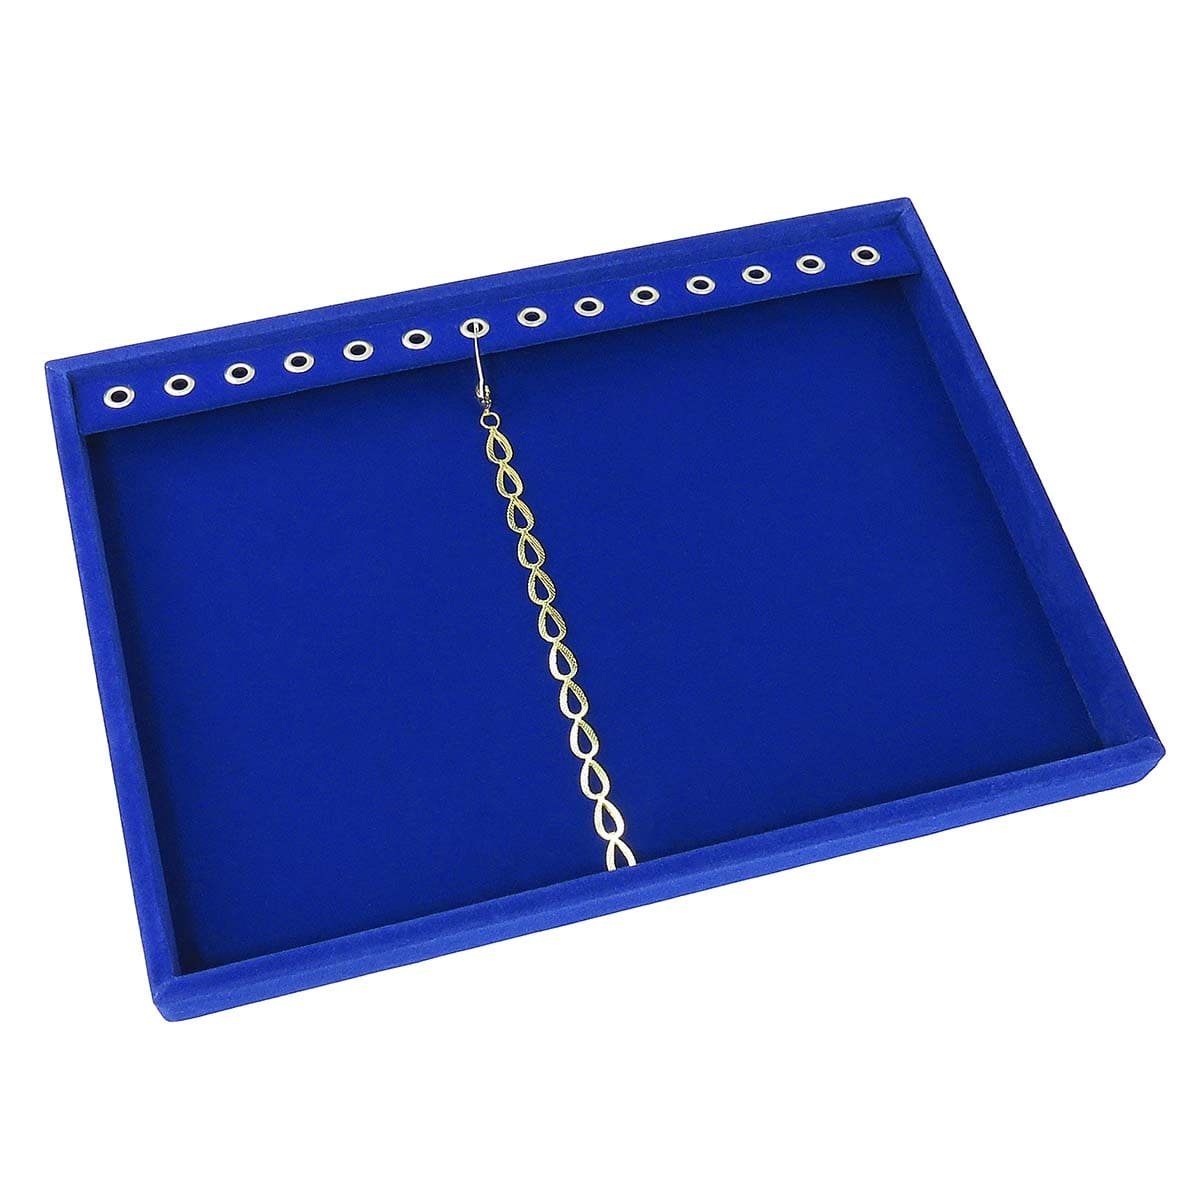 Bandeja Média Pulseira com Ilhós 21,5x29,5x2,3 cm Requinte Veludo Azul Royal